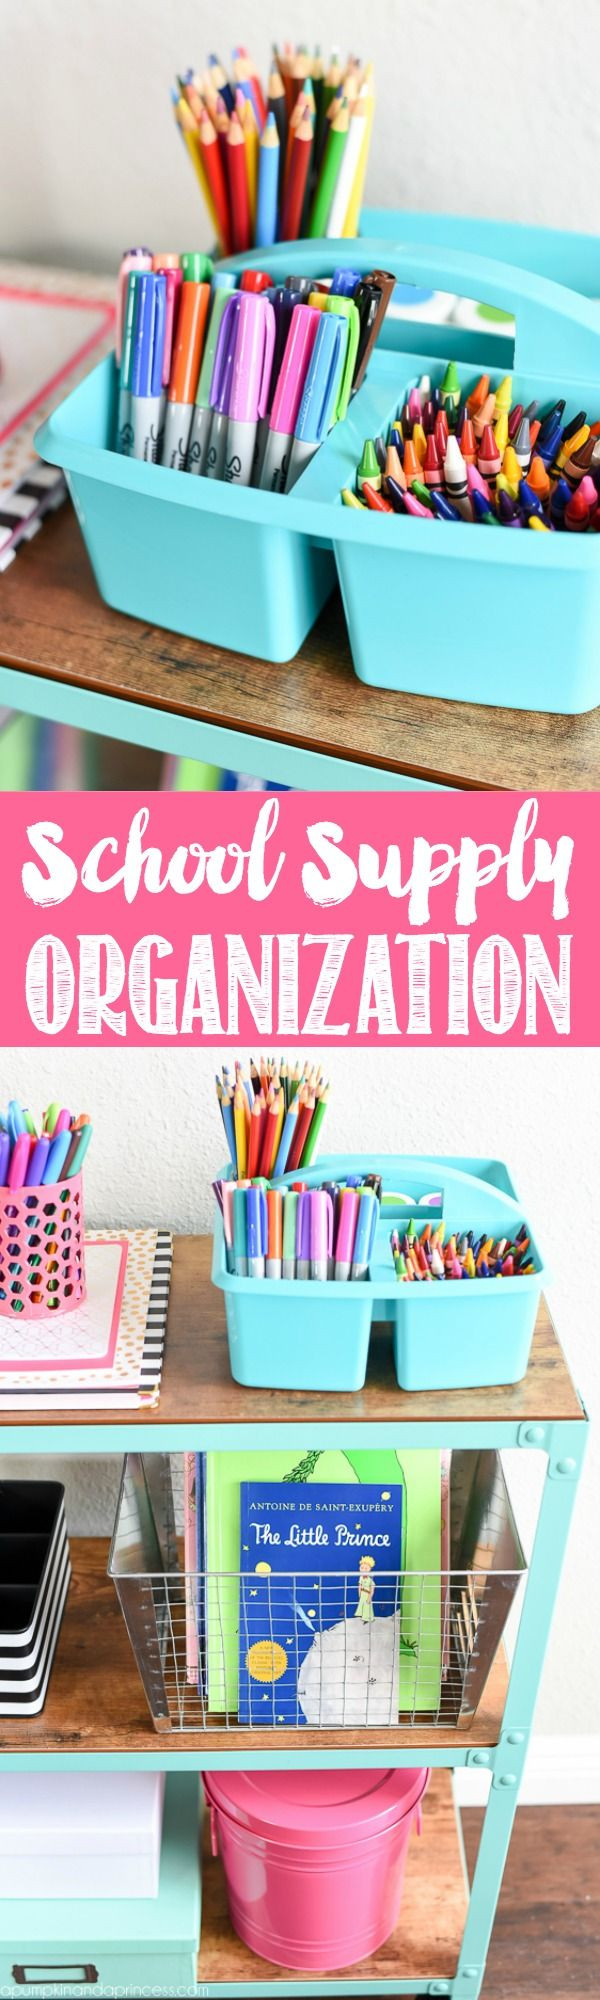 DIY School Organization Ideas
 School Supply Organization